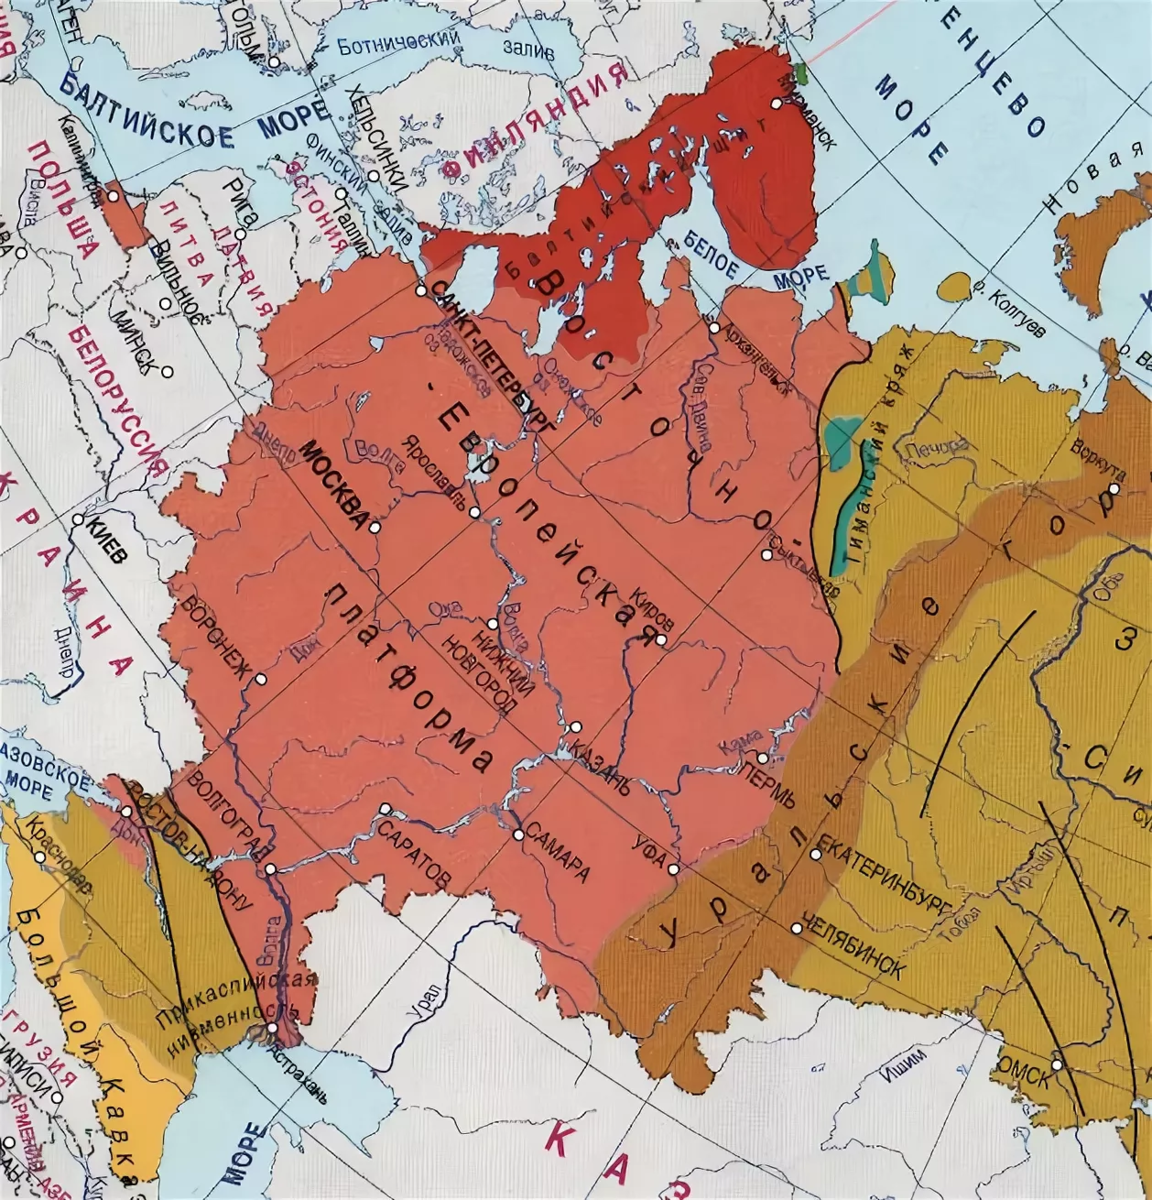 Восточно европейская равнина древние платформы